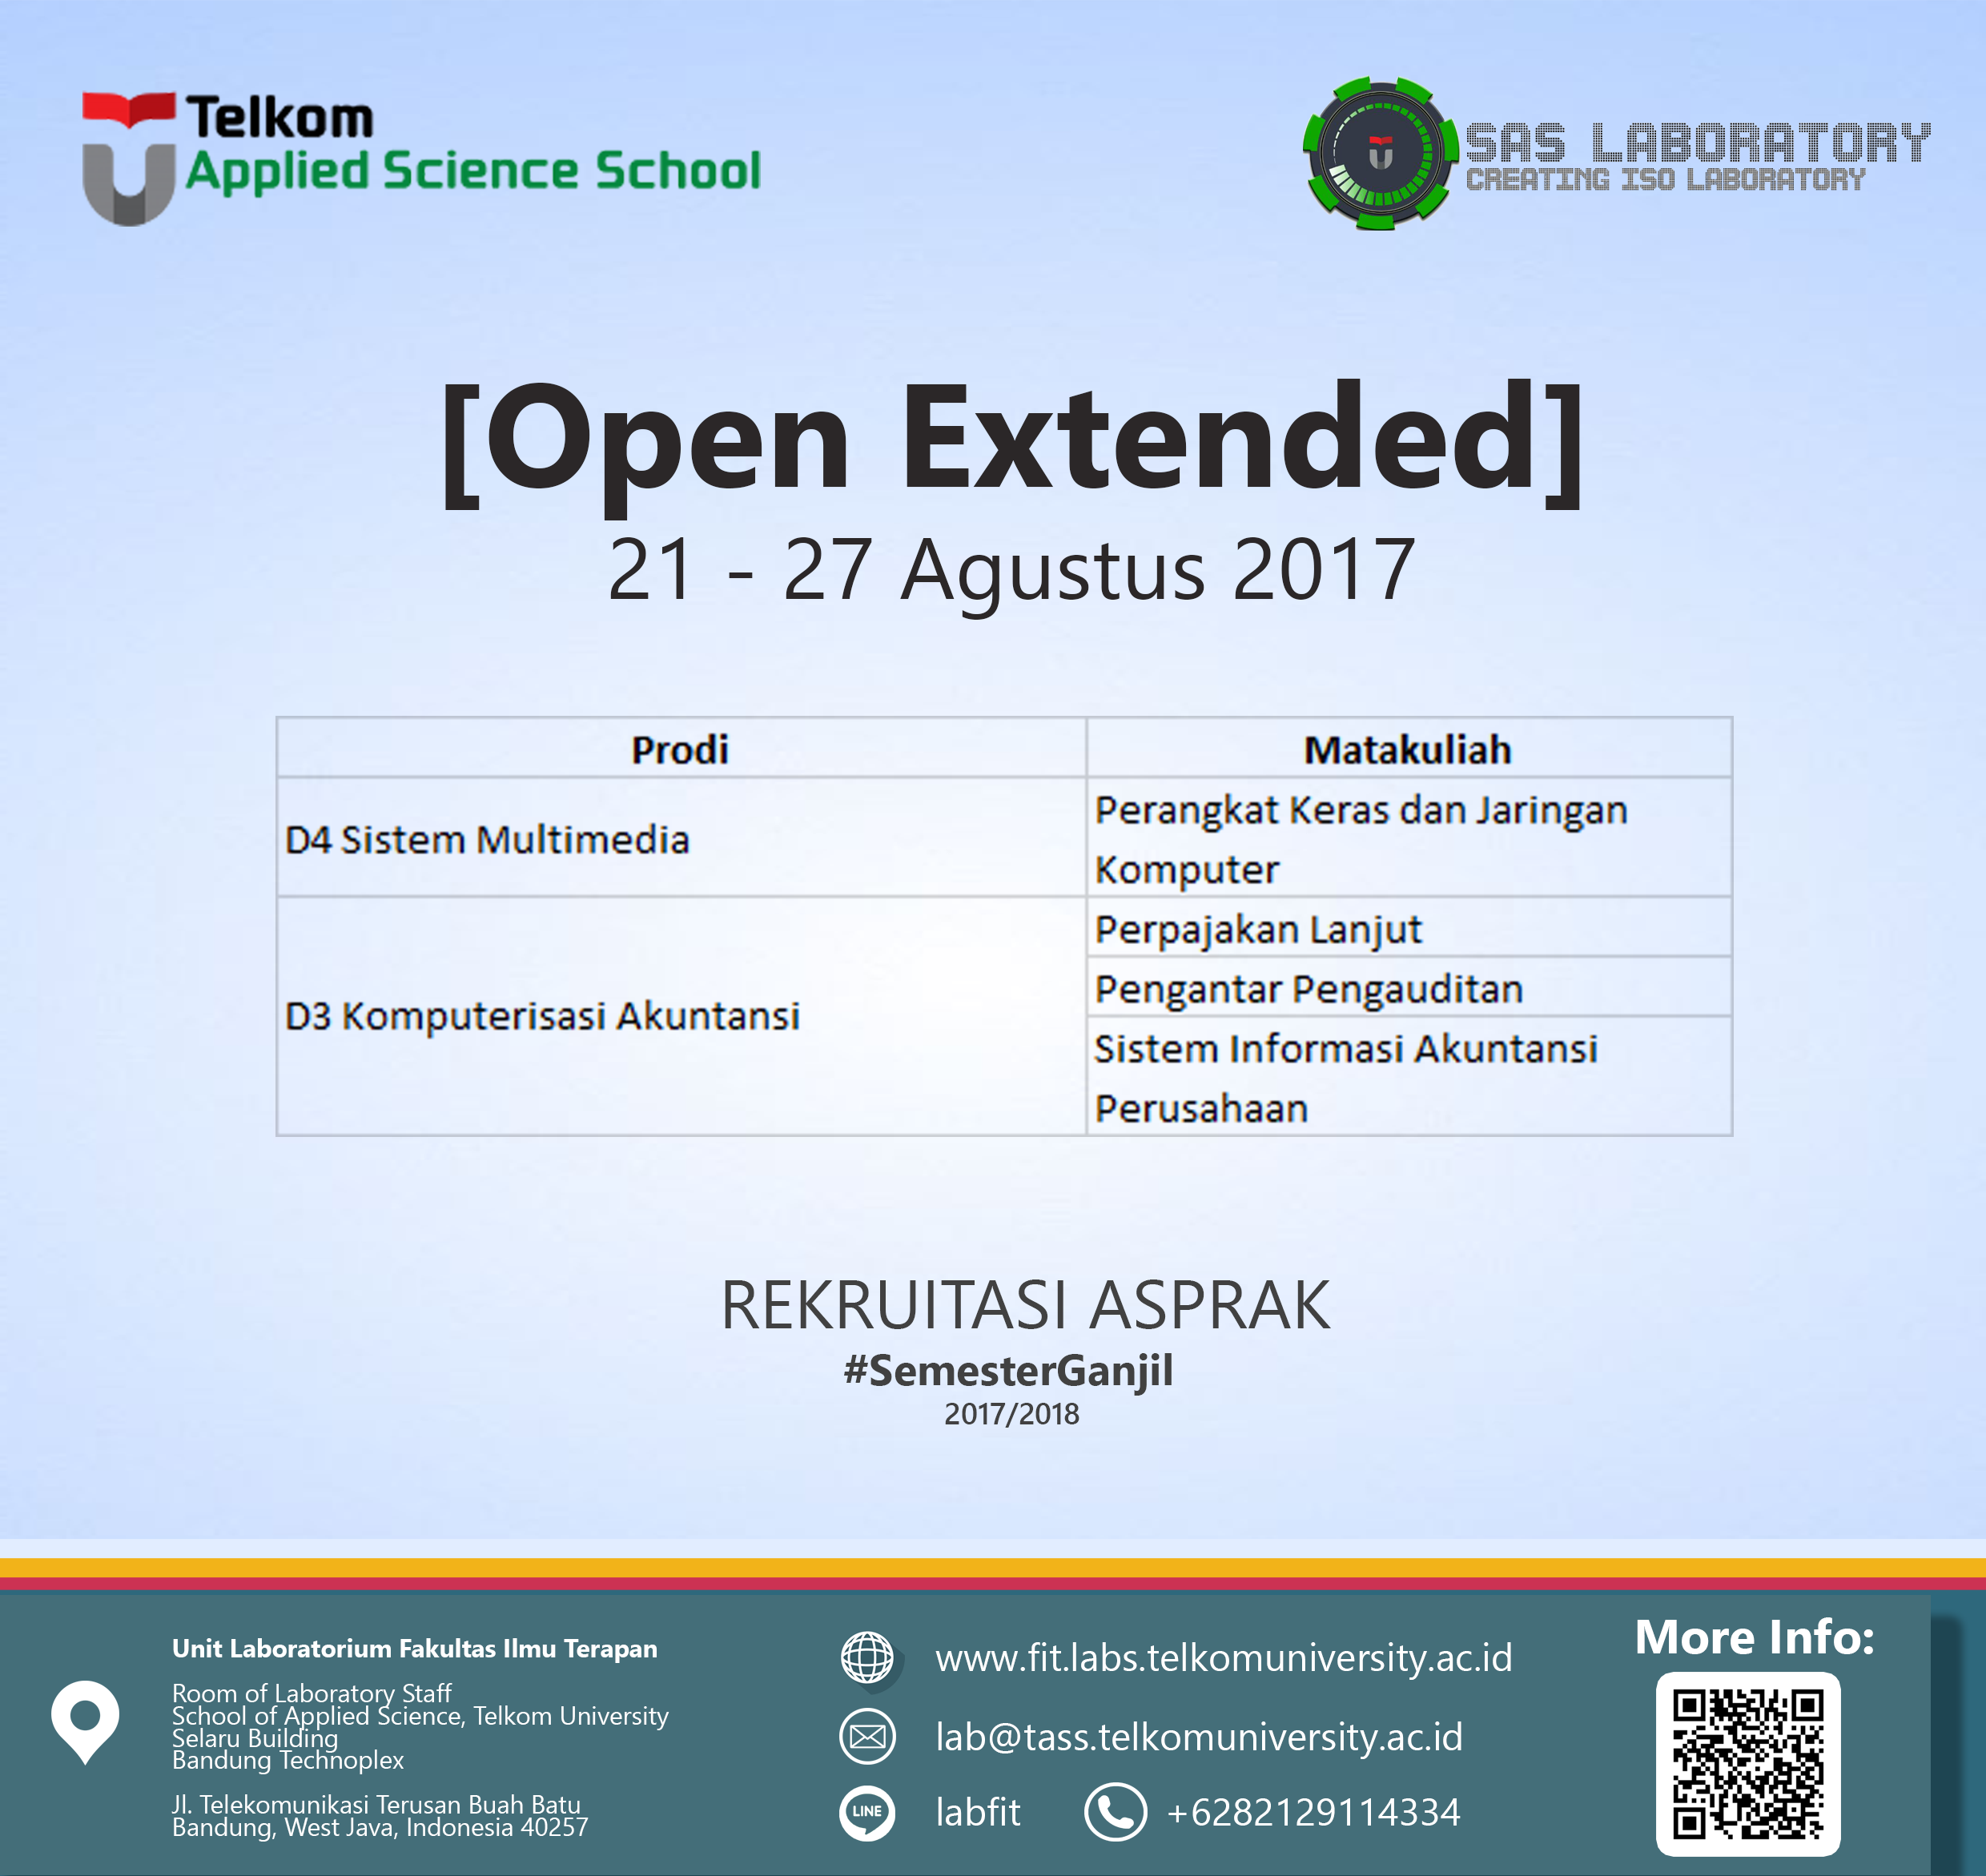 [Open] Extended Recruitment Asisten Praktikum Semester Ganjil 2017/2018